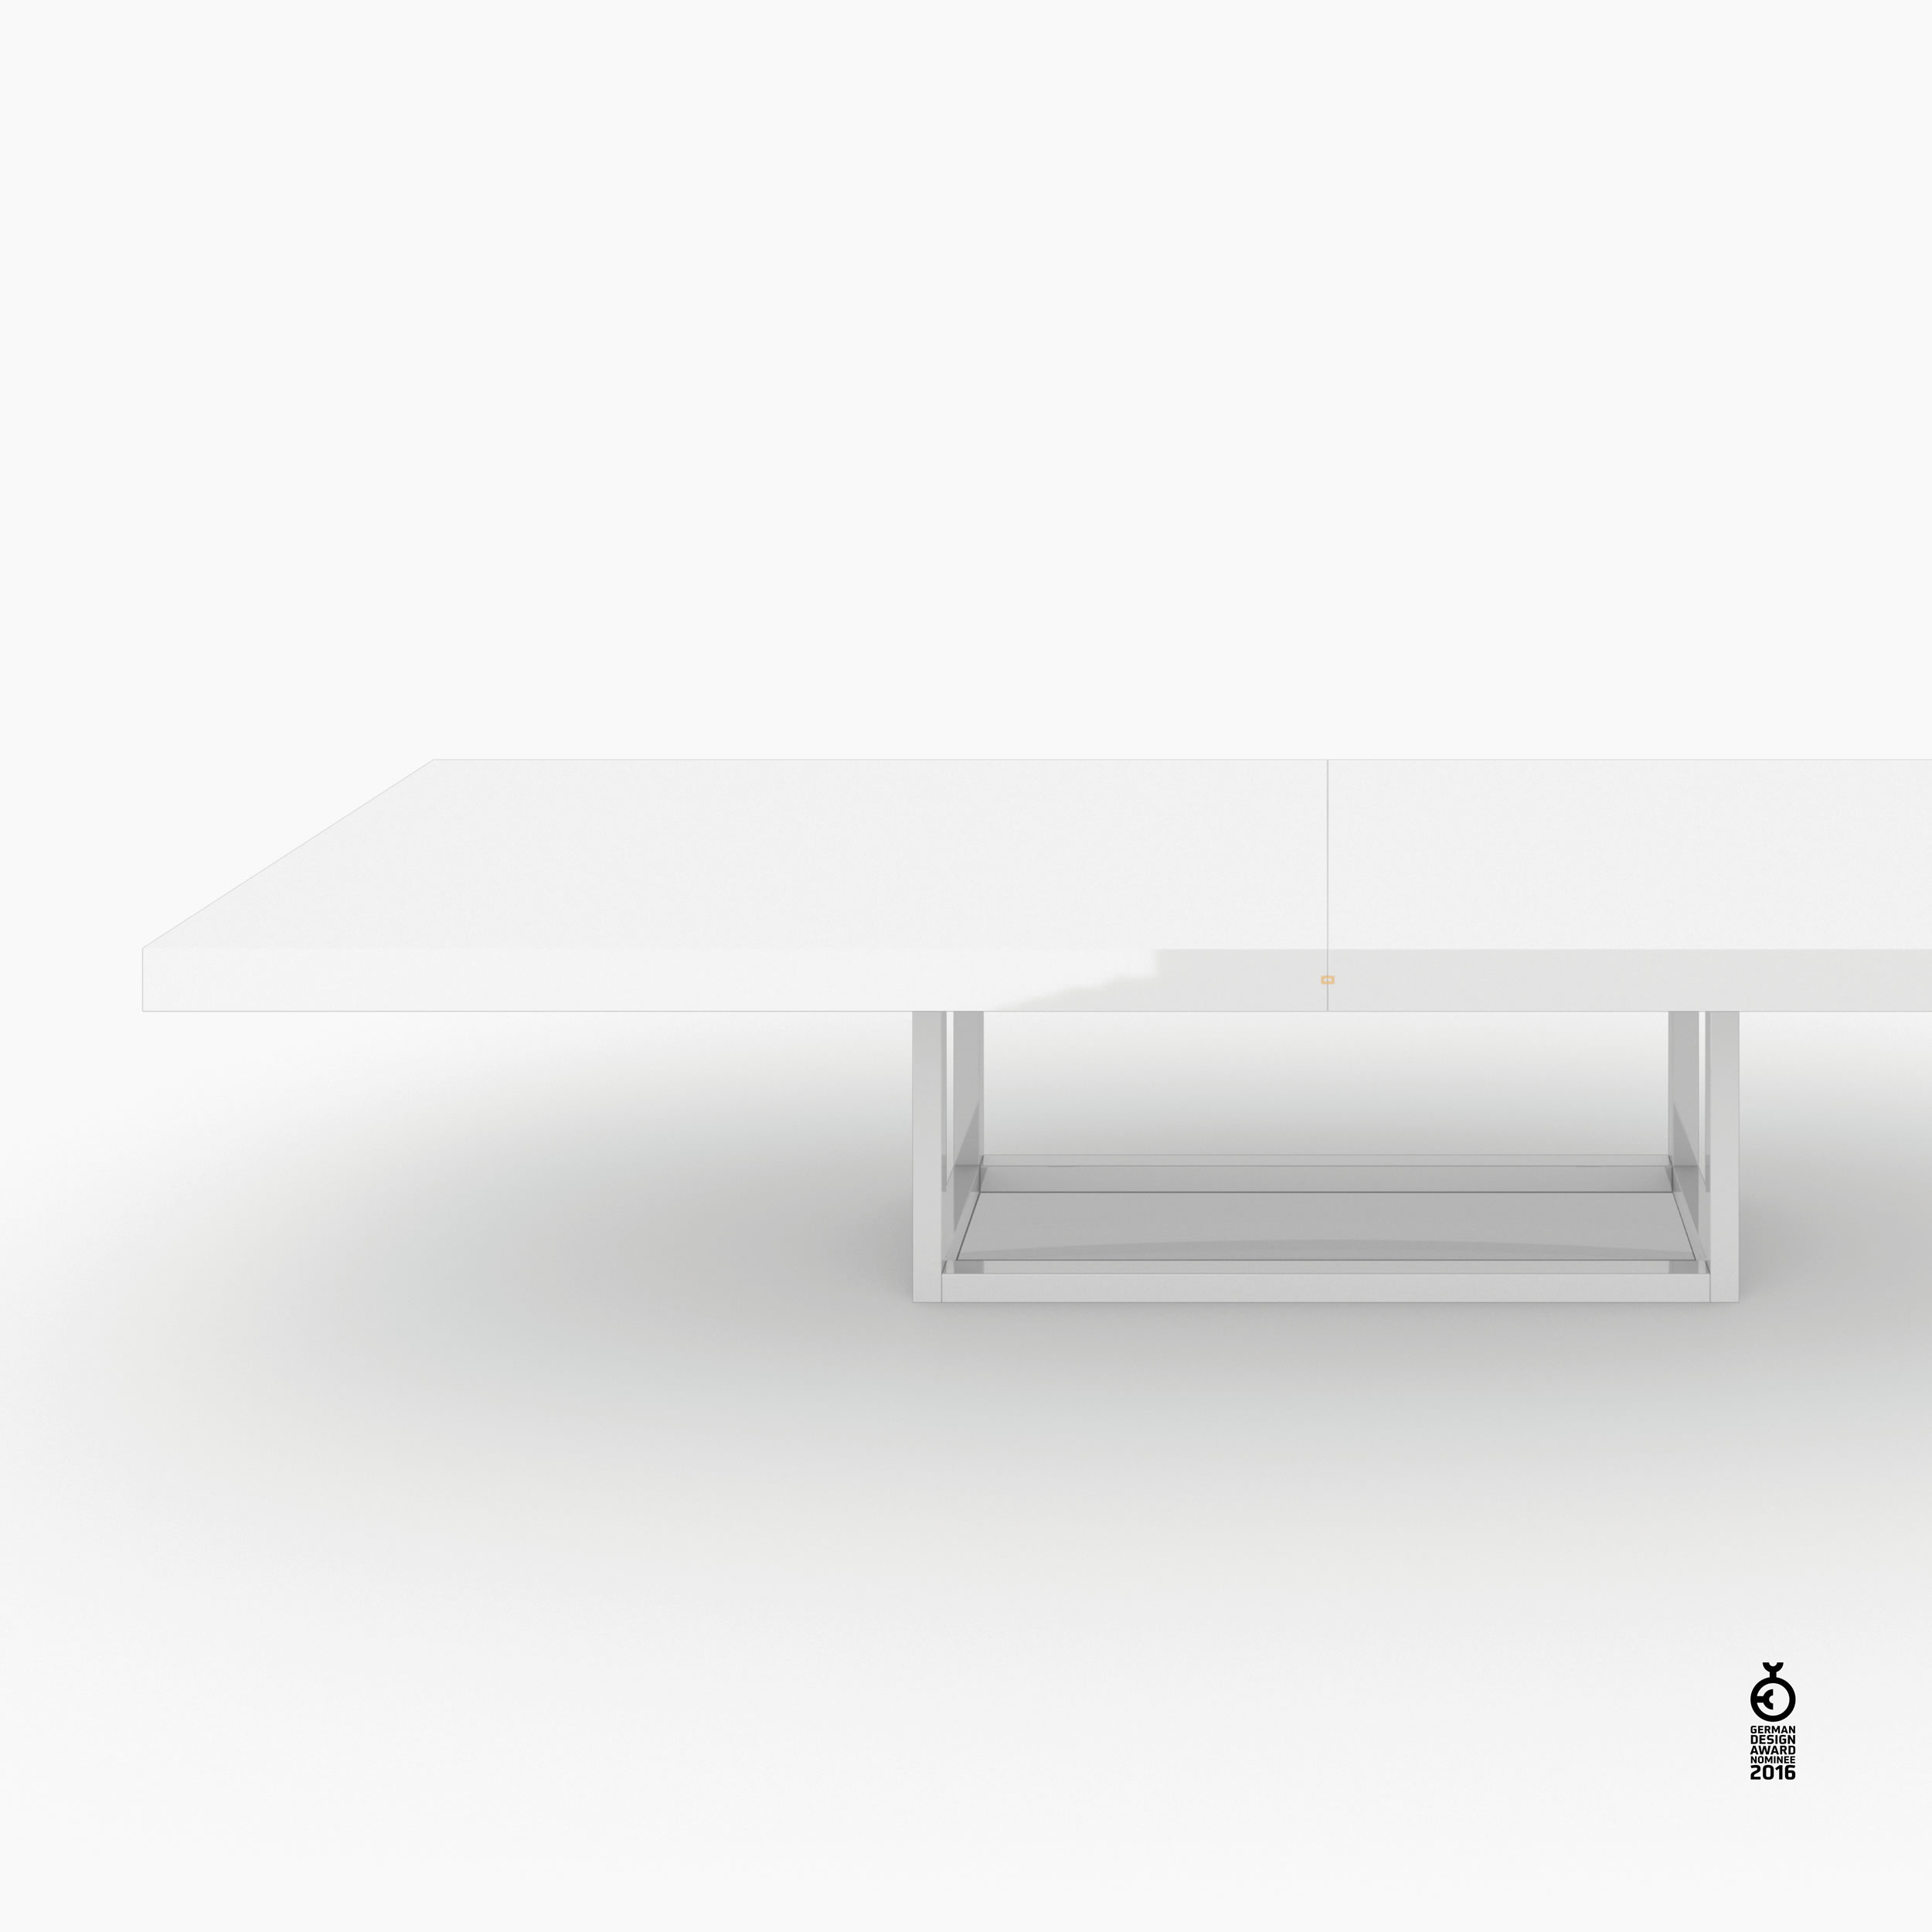 Konferenztisch Scheibe auf Quader weiss interiorstyle Besprechungsraum object design Konferenztische FS 81 FELIX SCHWAKE